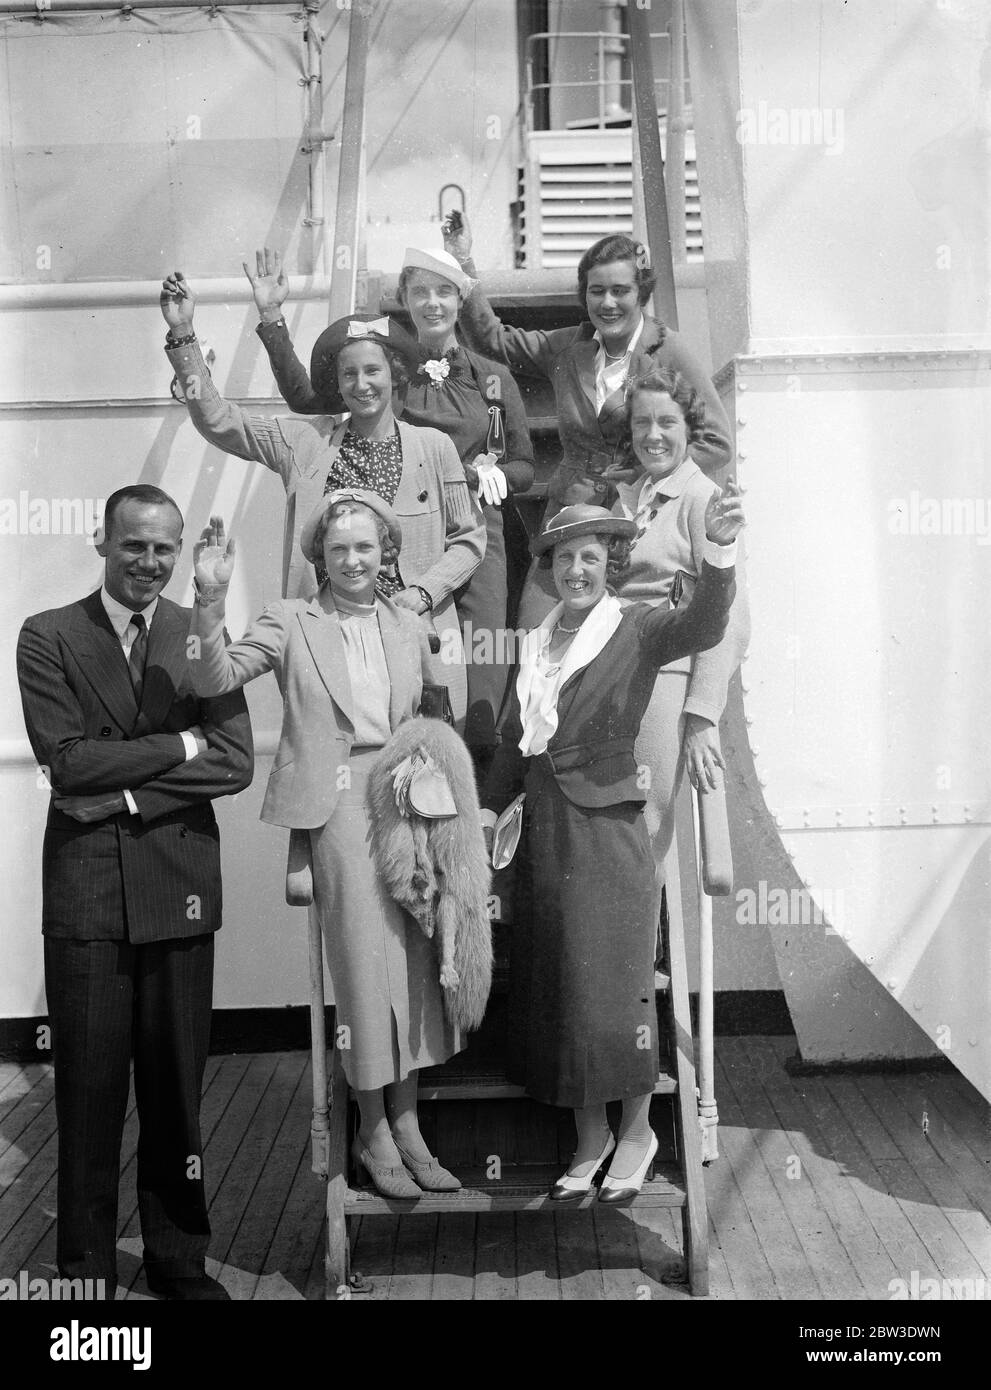 Das britische Wightman Cup Team segelt auf RMS Majestic. Das Wightman Cup Team auf dem RMS Majestic vor der Abfahrt. . Das Team besteht aus, unten Schritt nach oben (linke Seite) Miss Freda Jones, Miss Runde, Miss Key Stammers, (rechte Seite) Frau King, Miss Lyle und Miss Deerman, Herr M D Hors ist der Mannschaftskapitän. 31 Juli 1935 Stockfoto